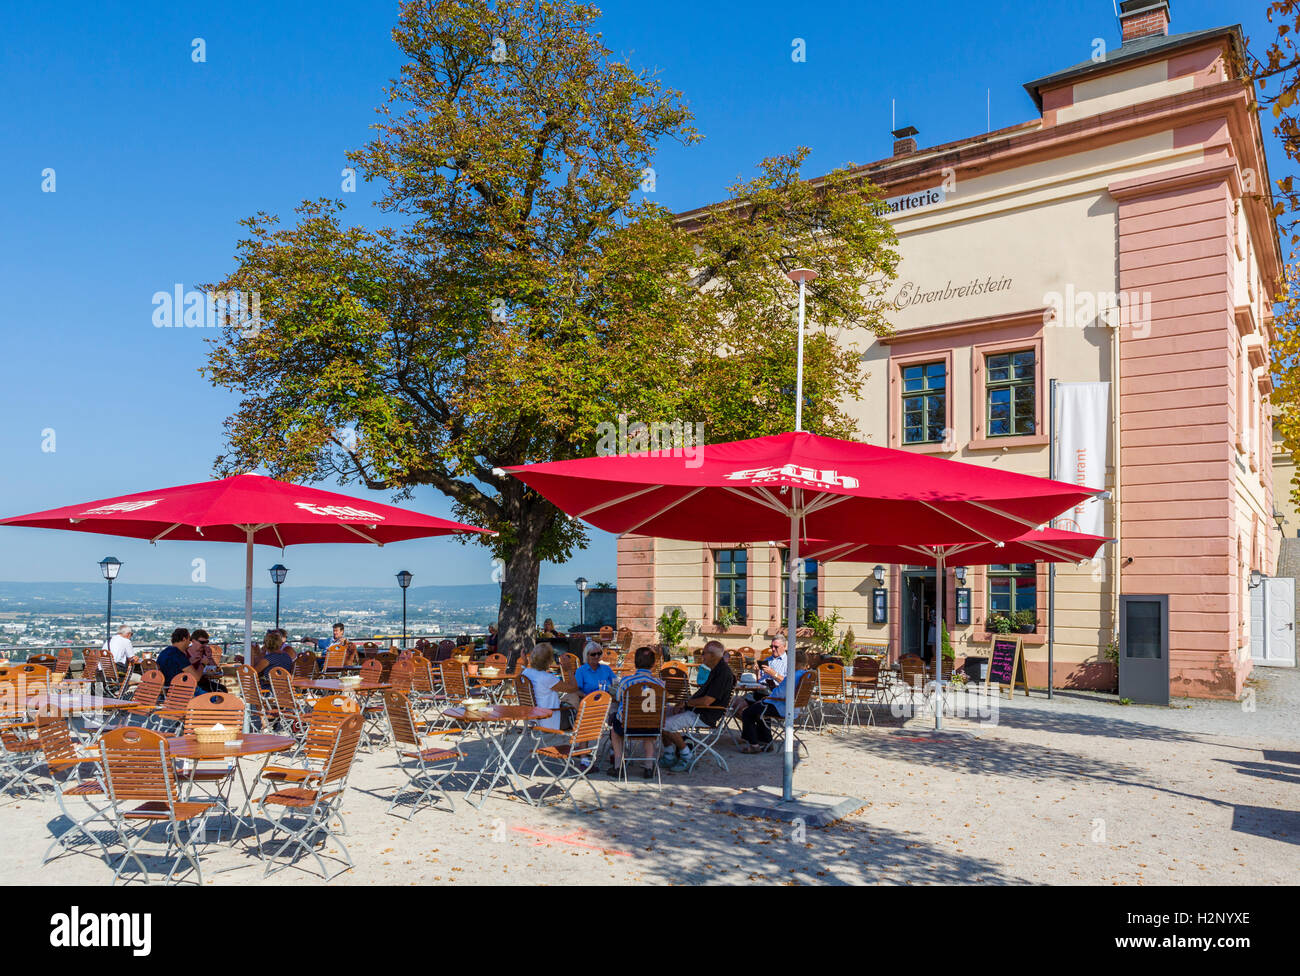 Cafe in der Festung Ehrenbreitstein (Festung Ehrenbreitstein), Koblenz, Rheinland-Pfalz, Deutschland Stockfoto